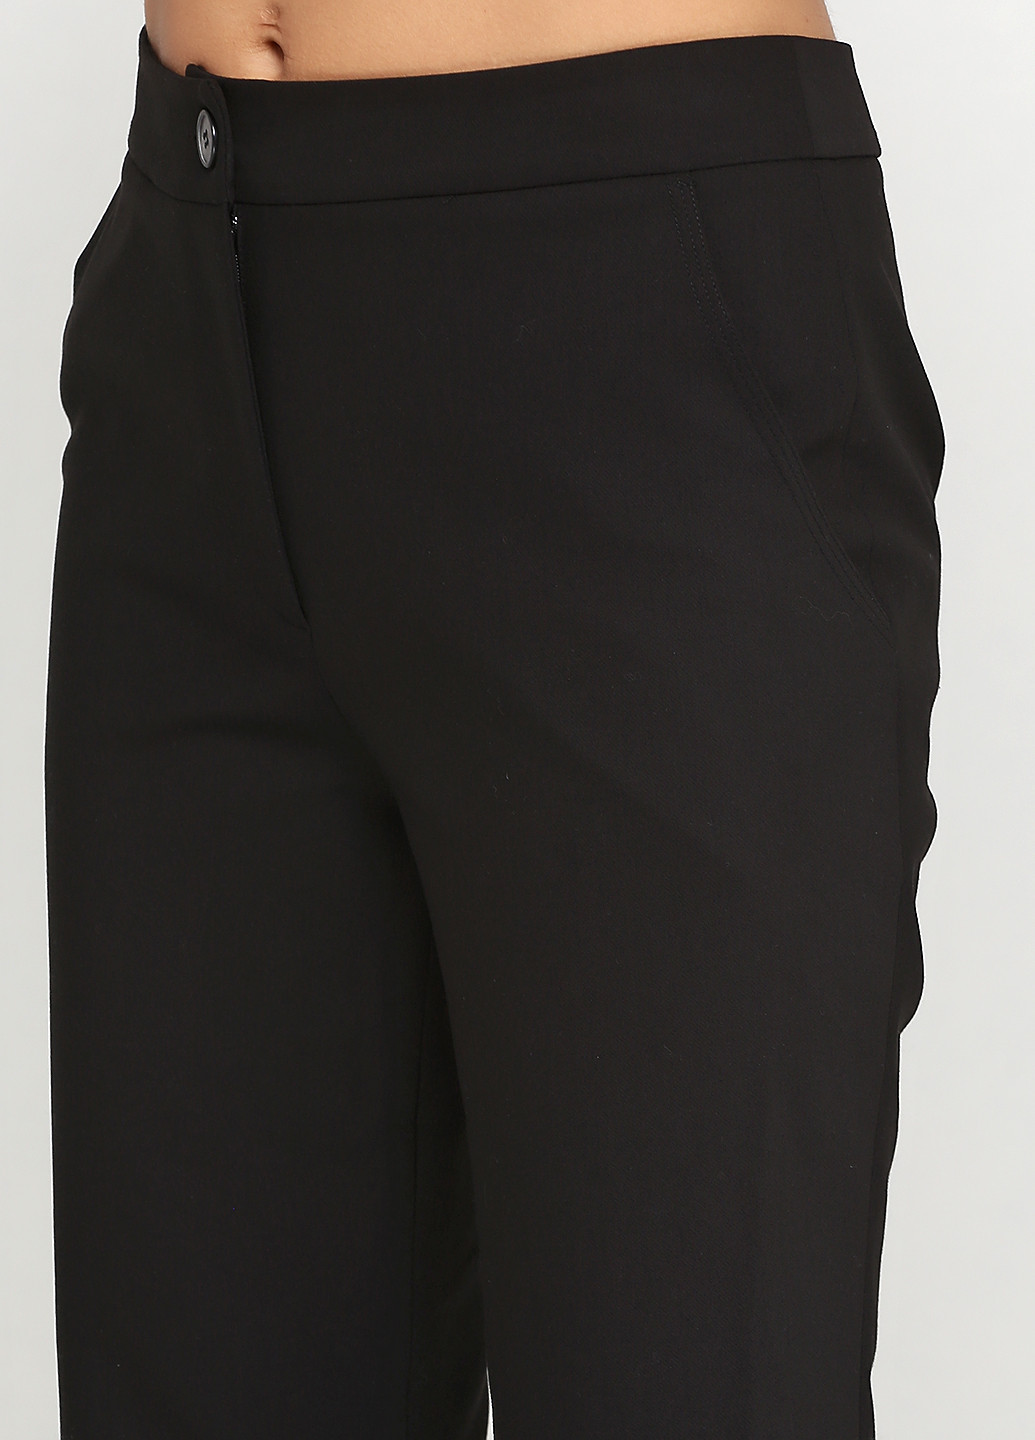 Черные классические демисезонные кюлоты брюки Lauren Vidal